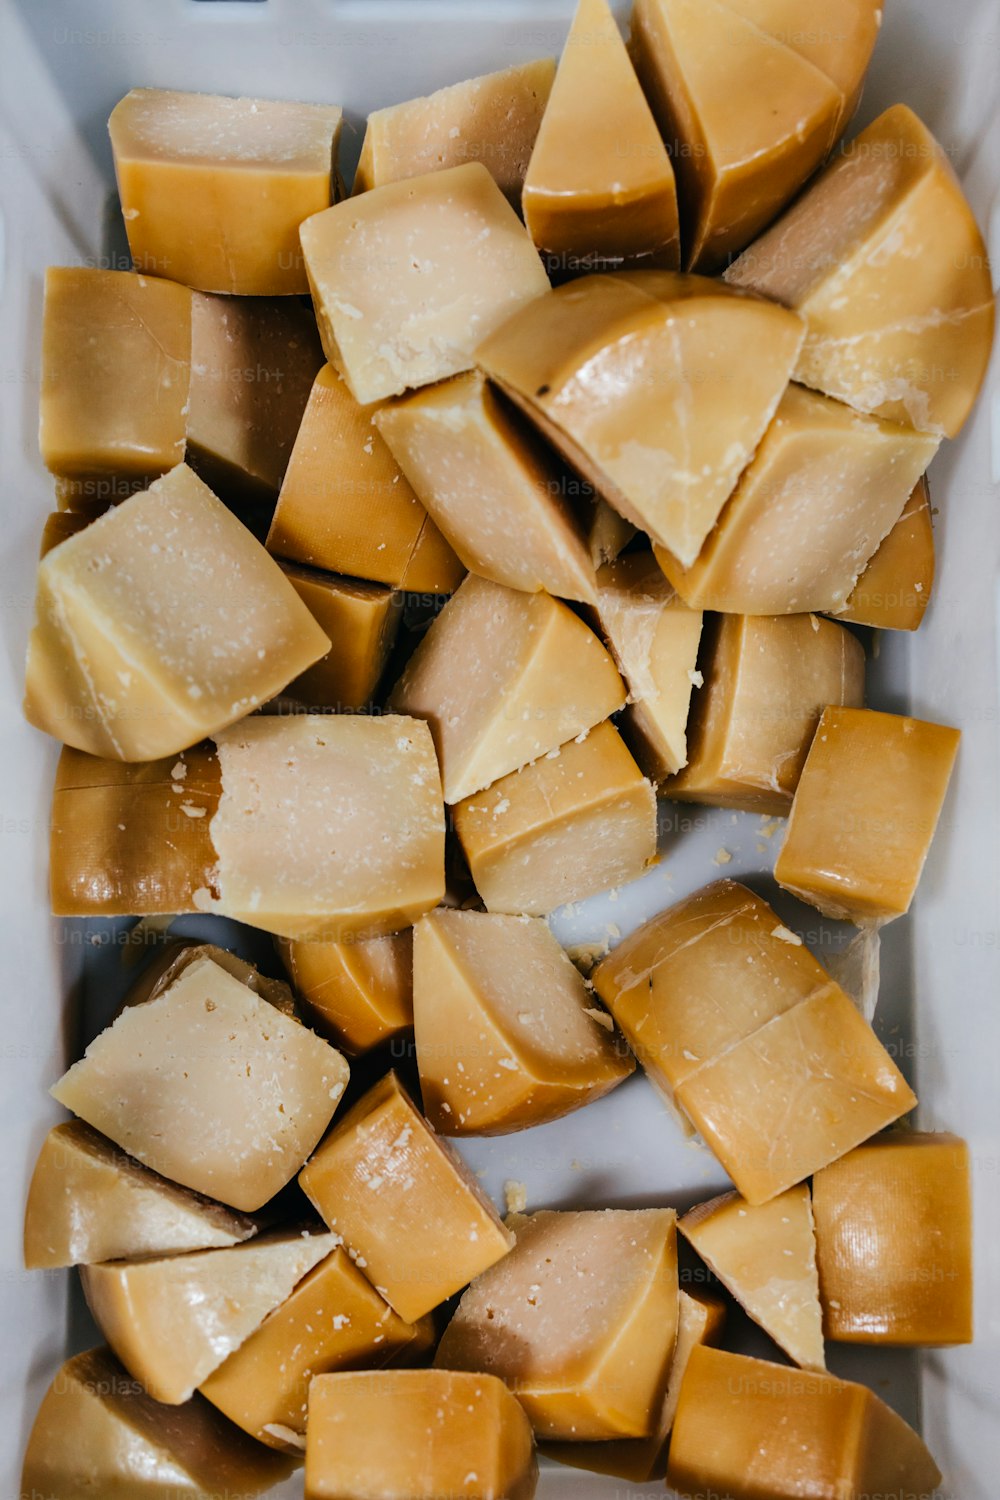 Detalles de la fábrica tradicional de quesos y productos lácteos. Trozos de delicioso queso en lonchas listos para empacar.